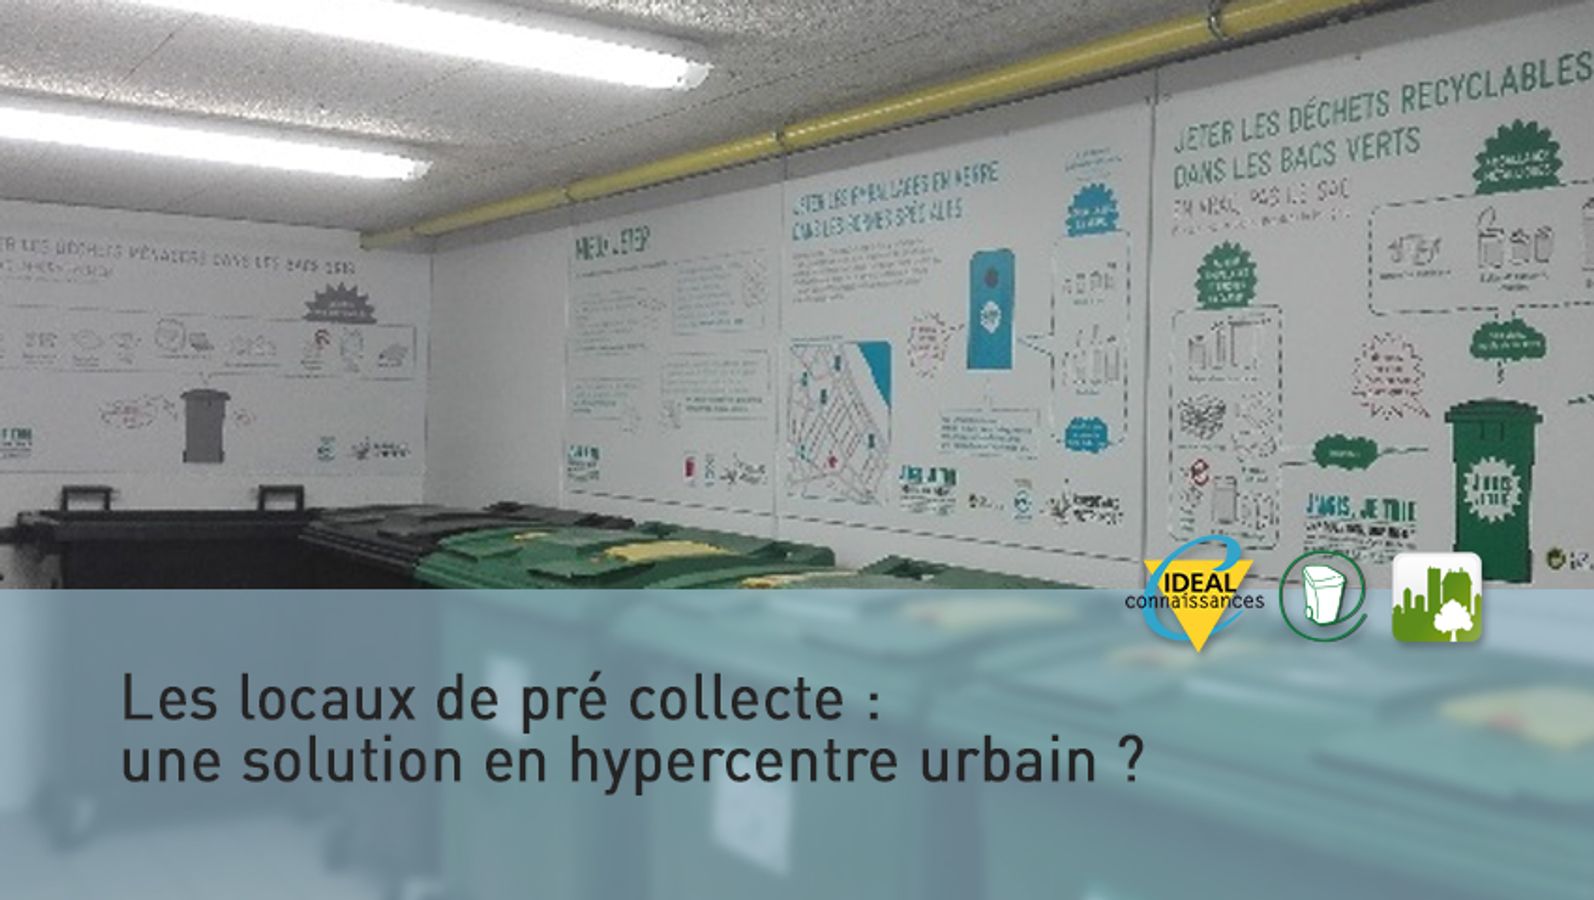 Les locaux de pré collecte : une solution en hypercentre urbain ?